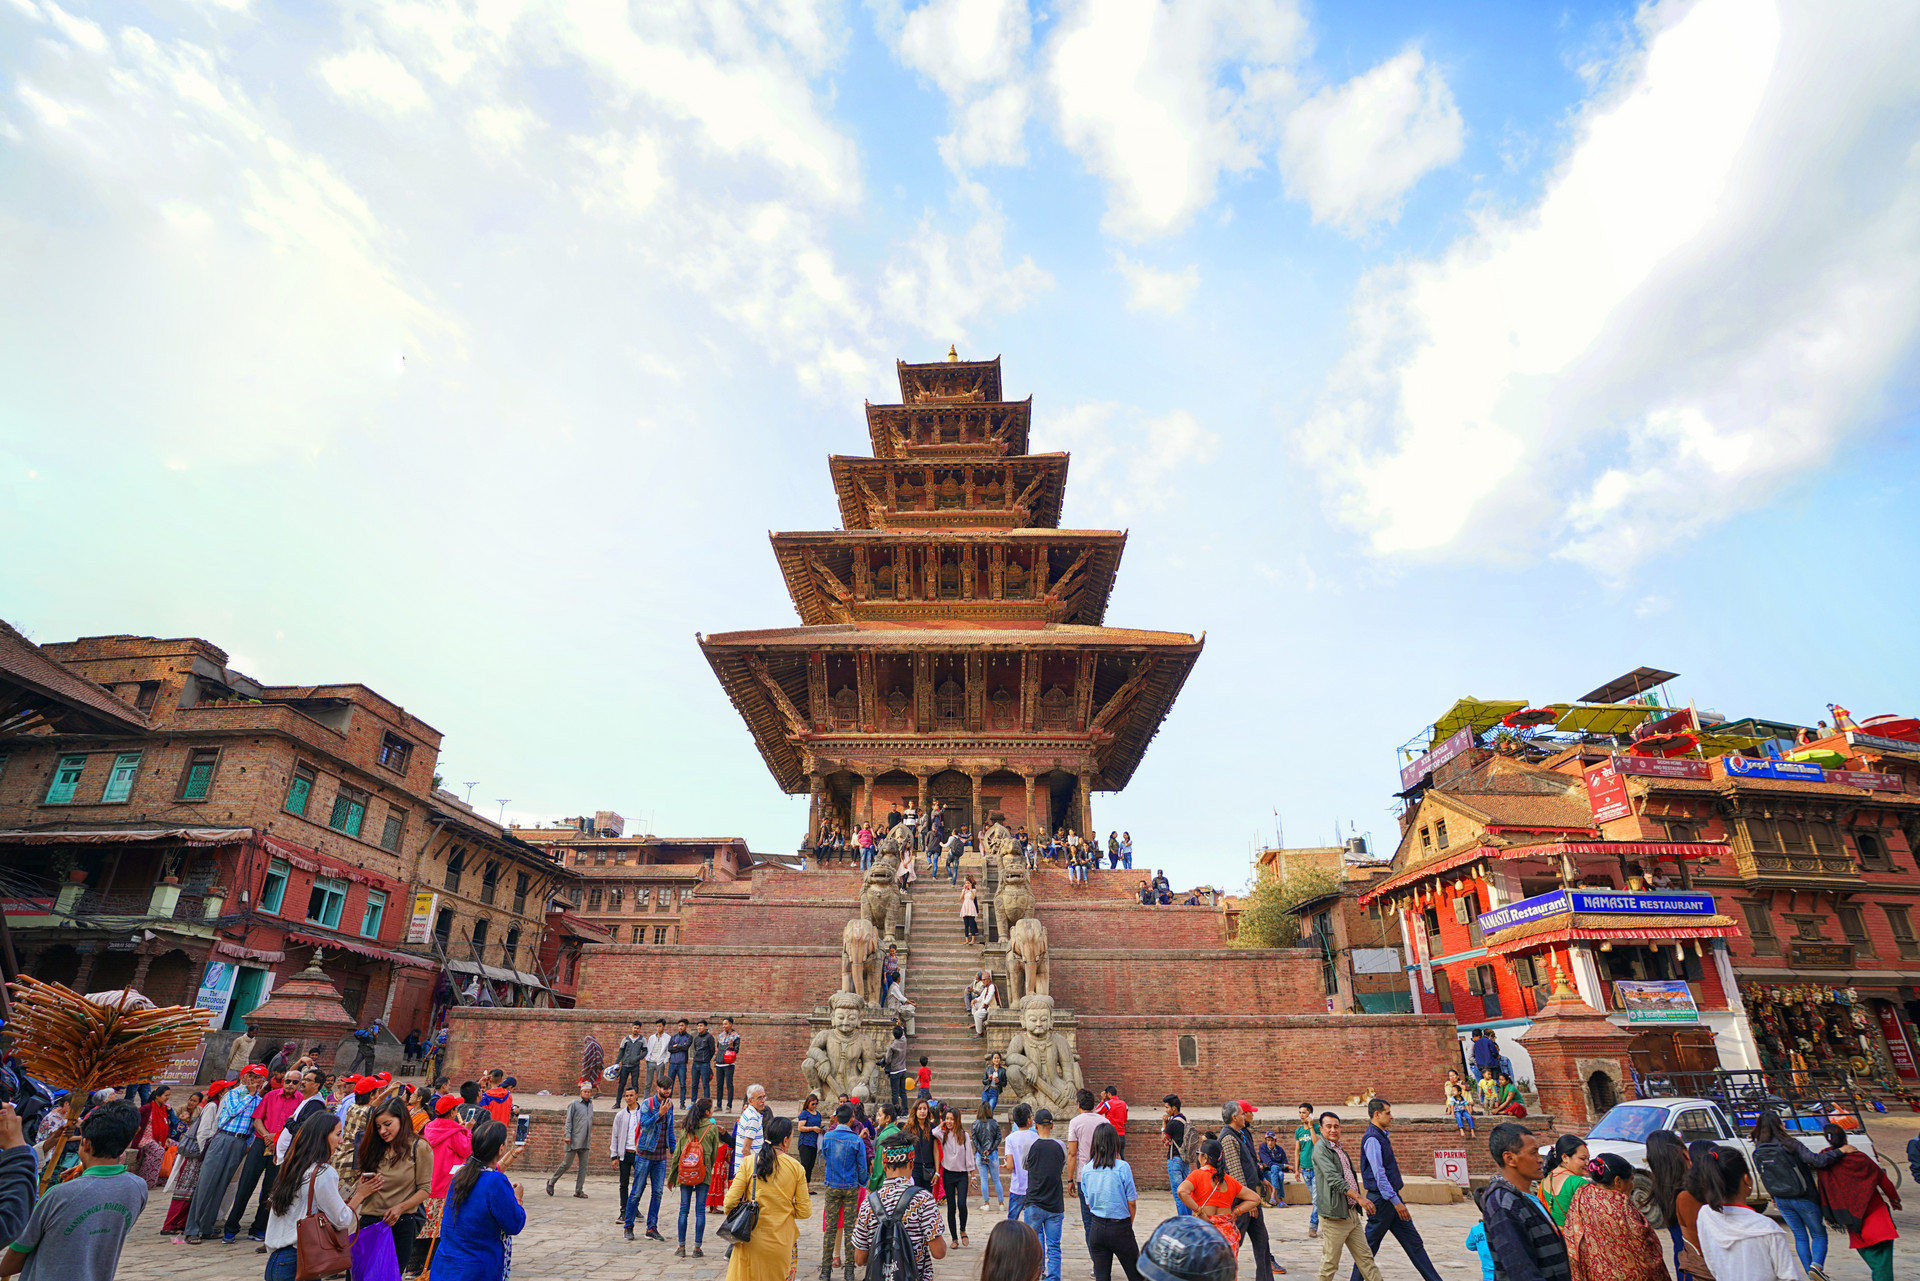 尼泊尔旅游业重向外国游客全面开放